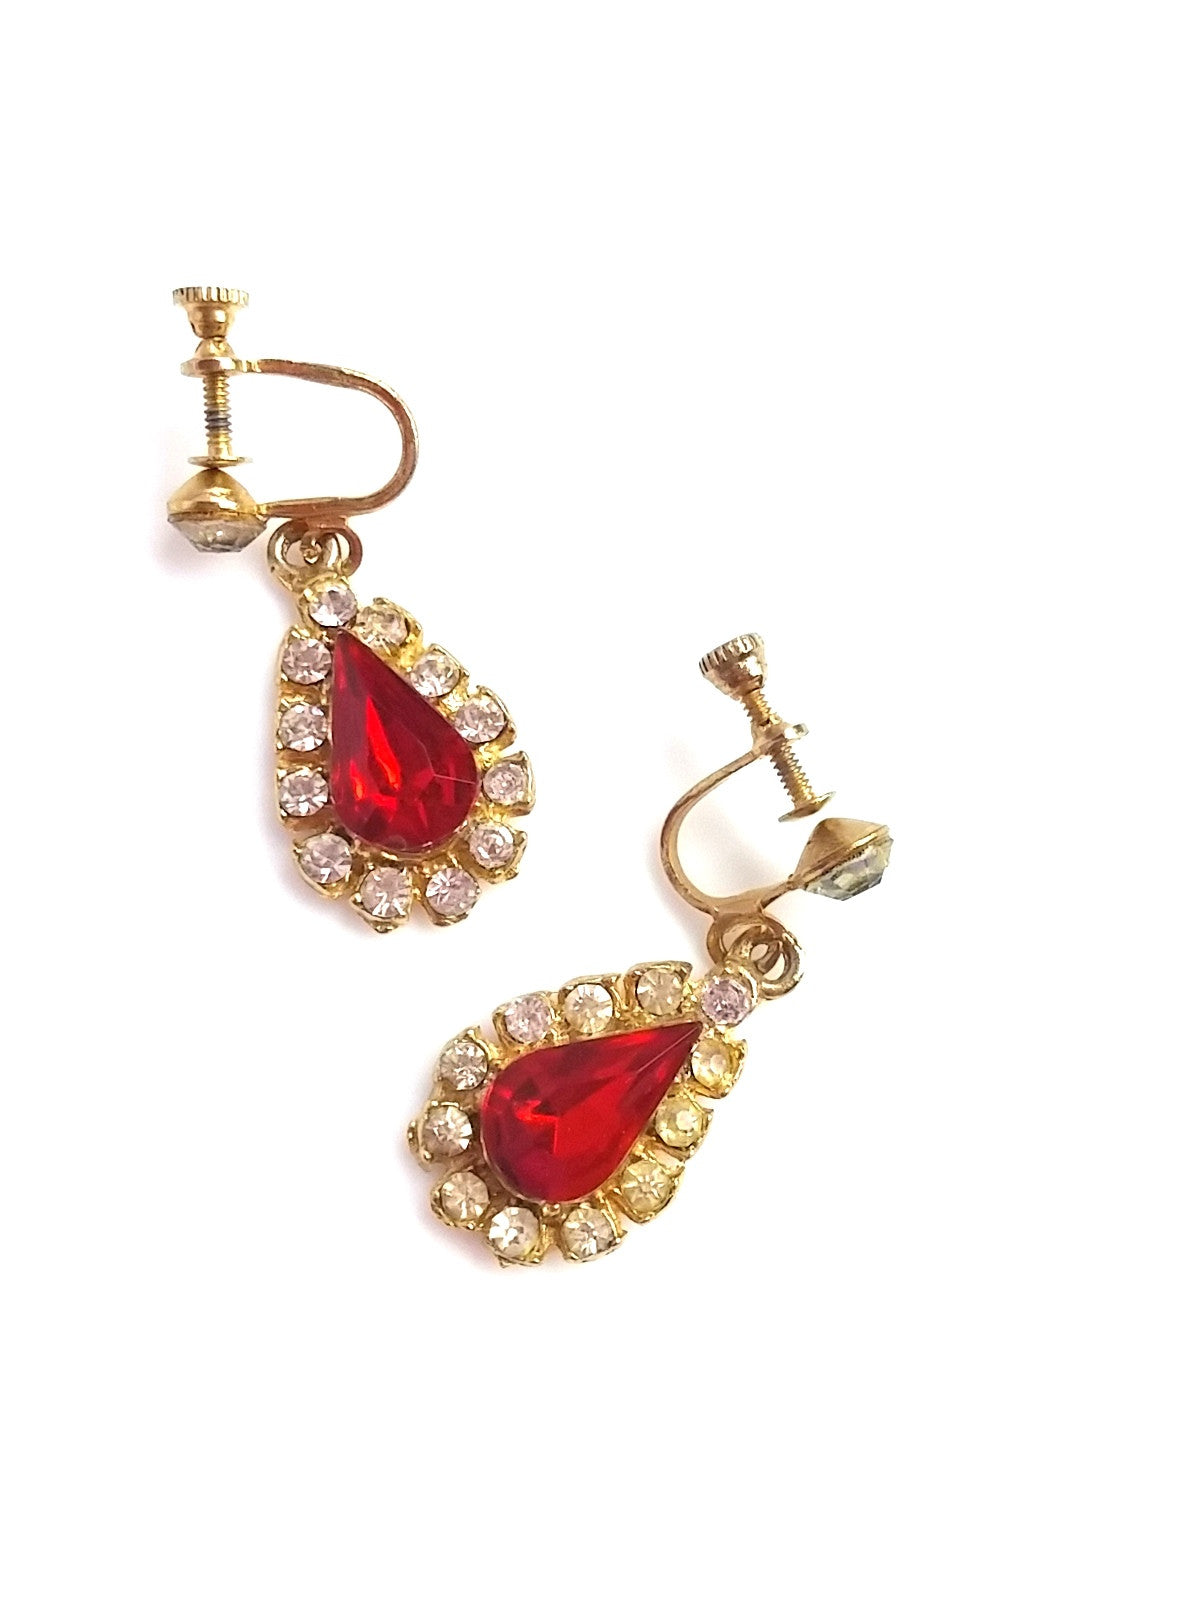 Vintage 60s Rhinestone Drop Earrings Red Tear Drop Center - Dirty 30 Vintage | Vintage Clothing, Vintage Jewelry, Vintage Accessories